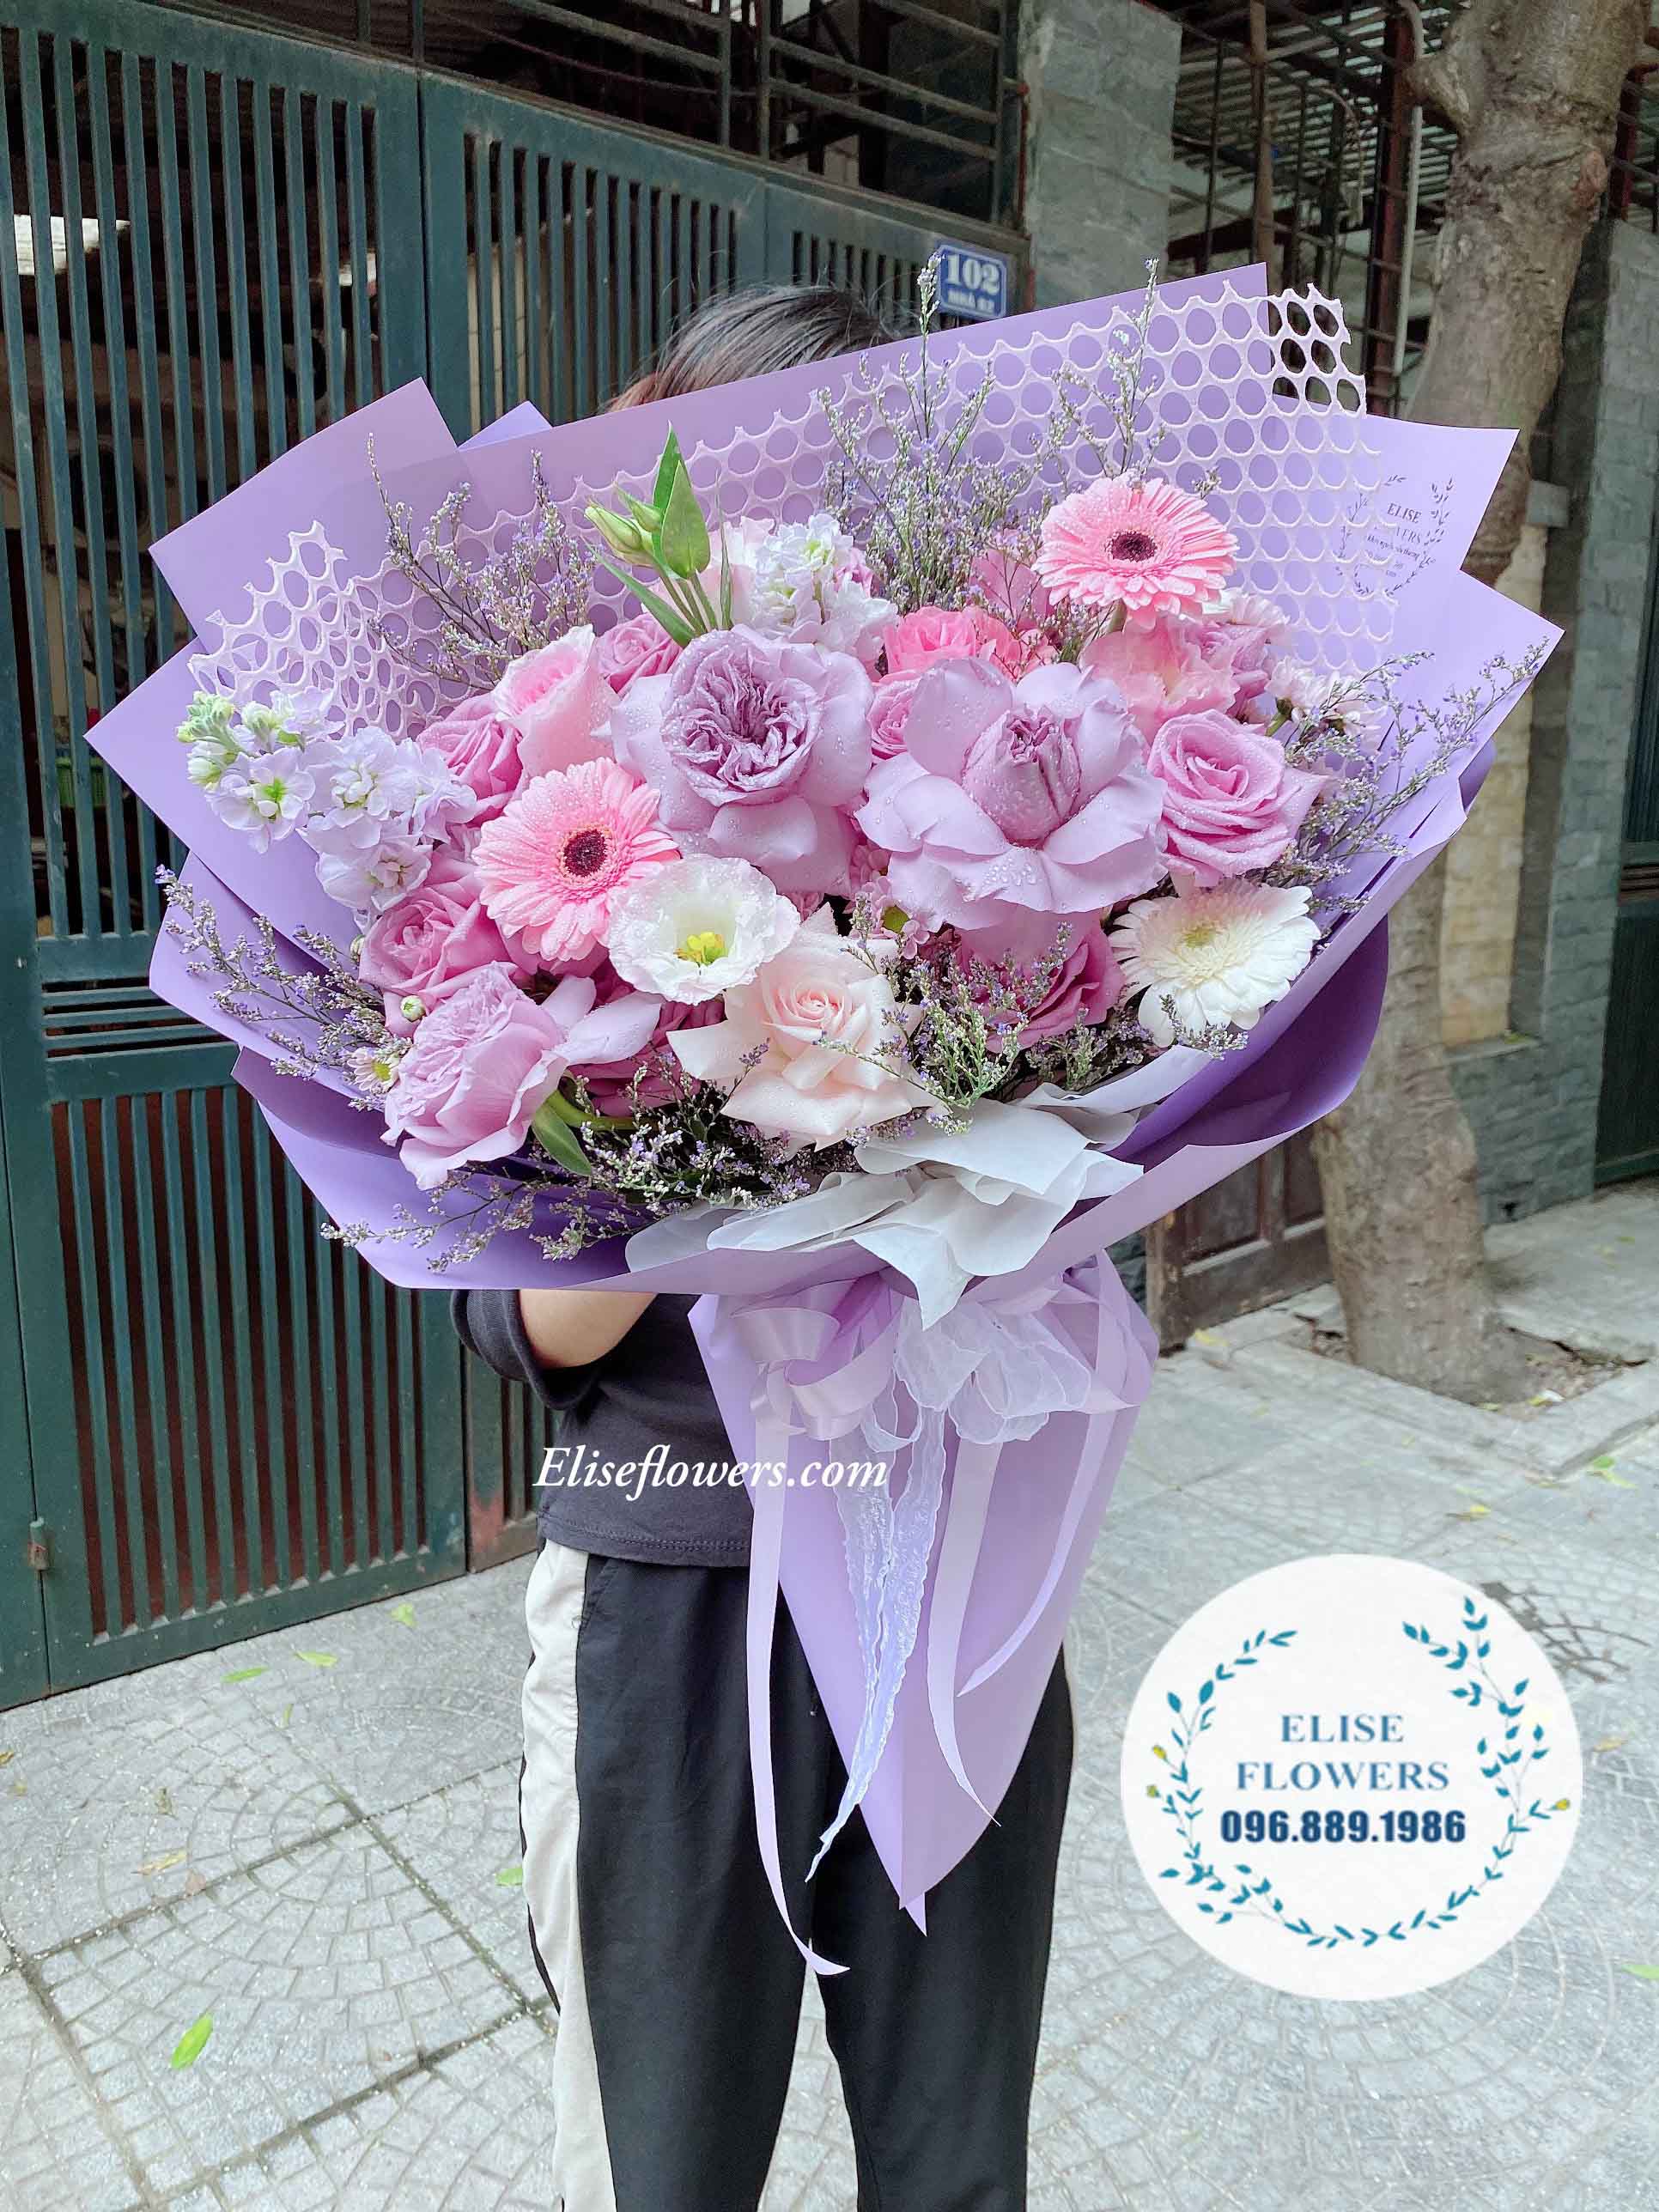 bó hoa hồng tím tặng sinh nhật mẹ | Bó hoa sinh nhật màu tím đẹp tặng mẹ | Shop hoa tươi uy tín ở Hà Nội | Điện hoa sinh nhật Hà Nội | Eliseflowers